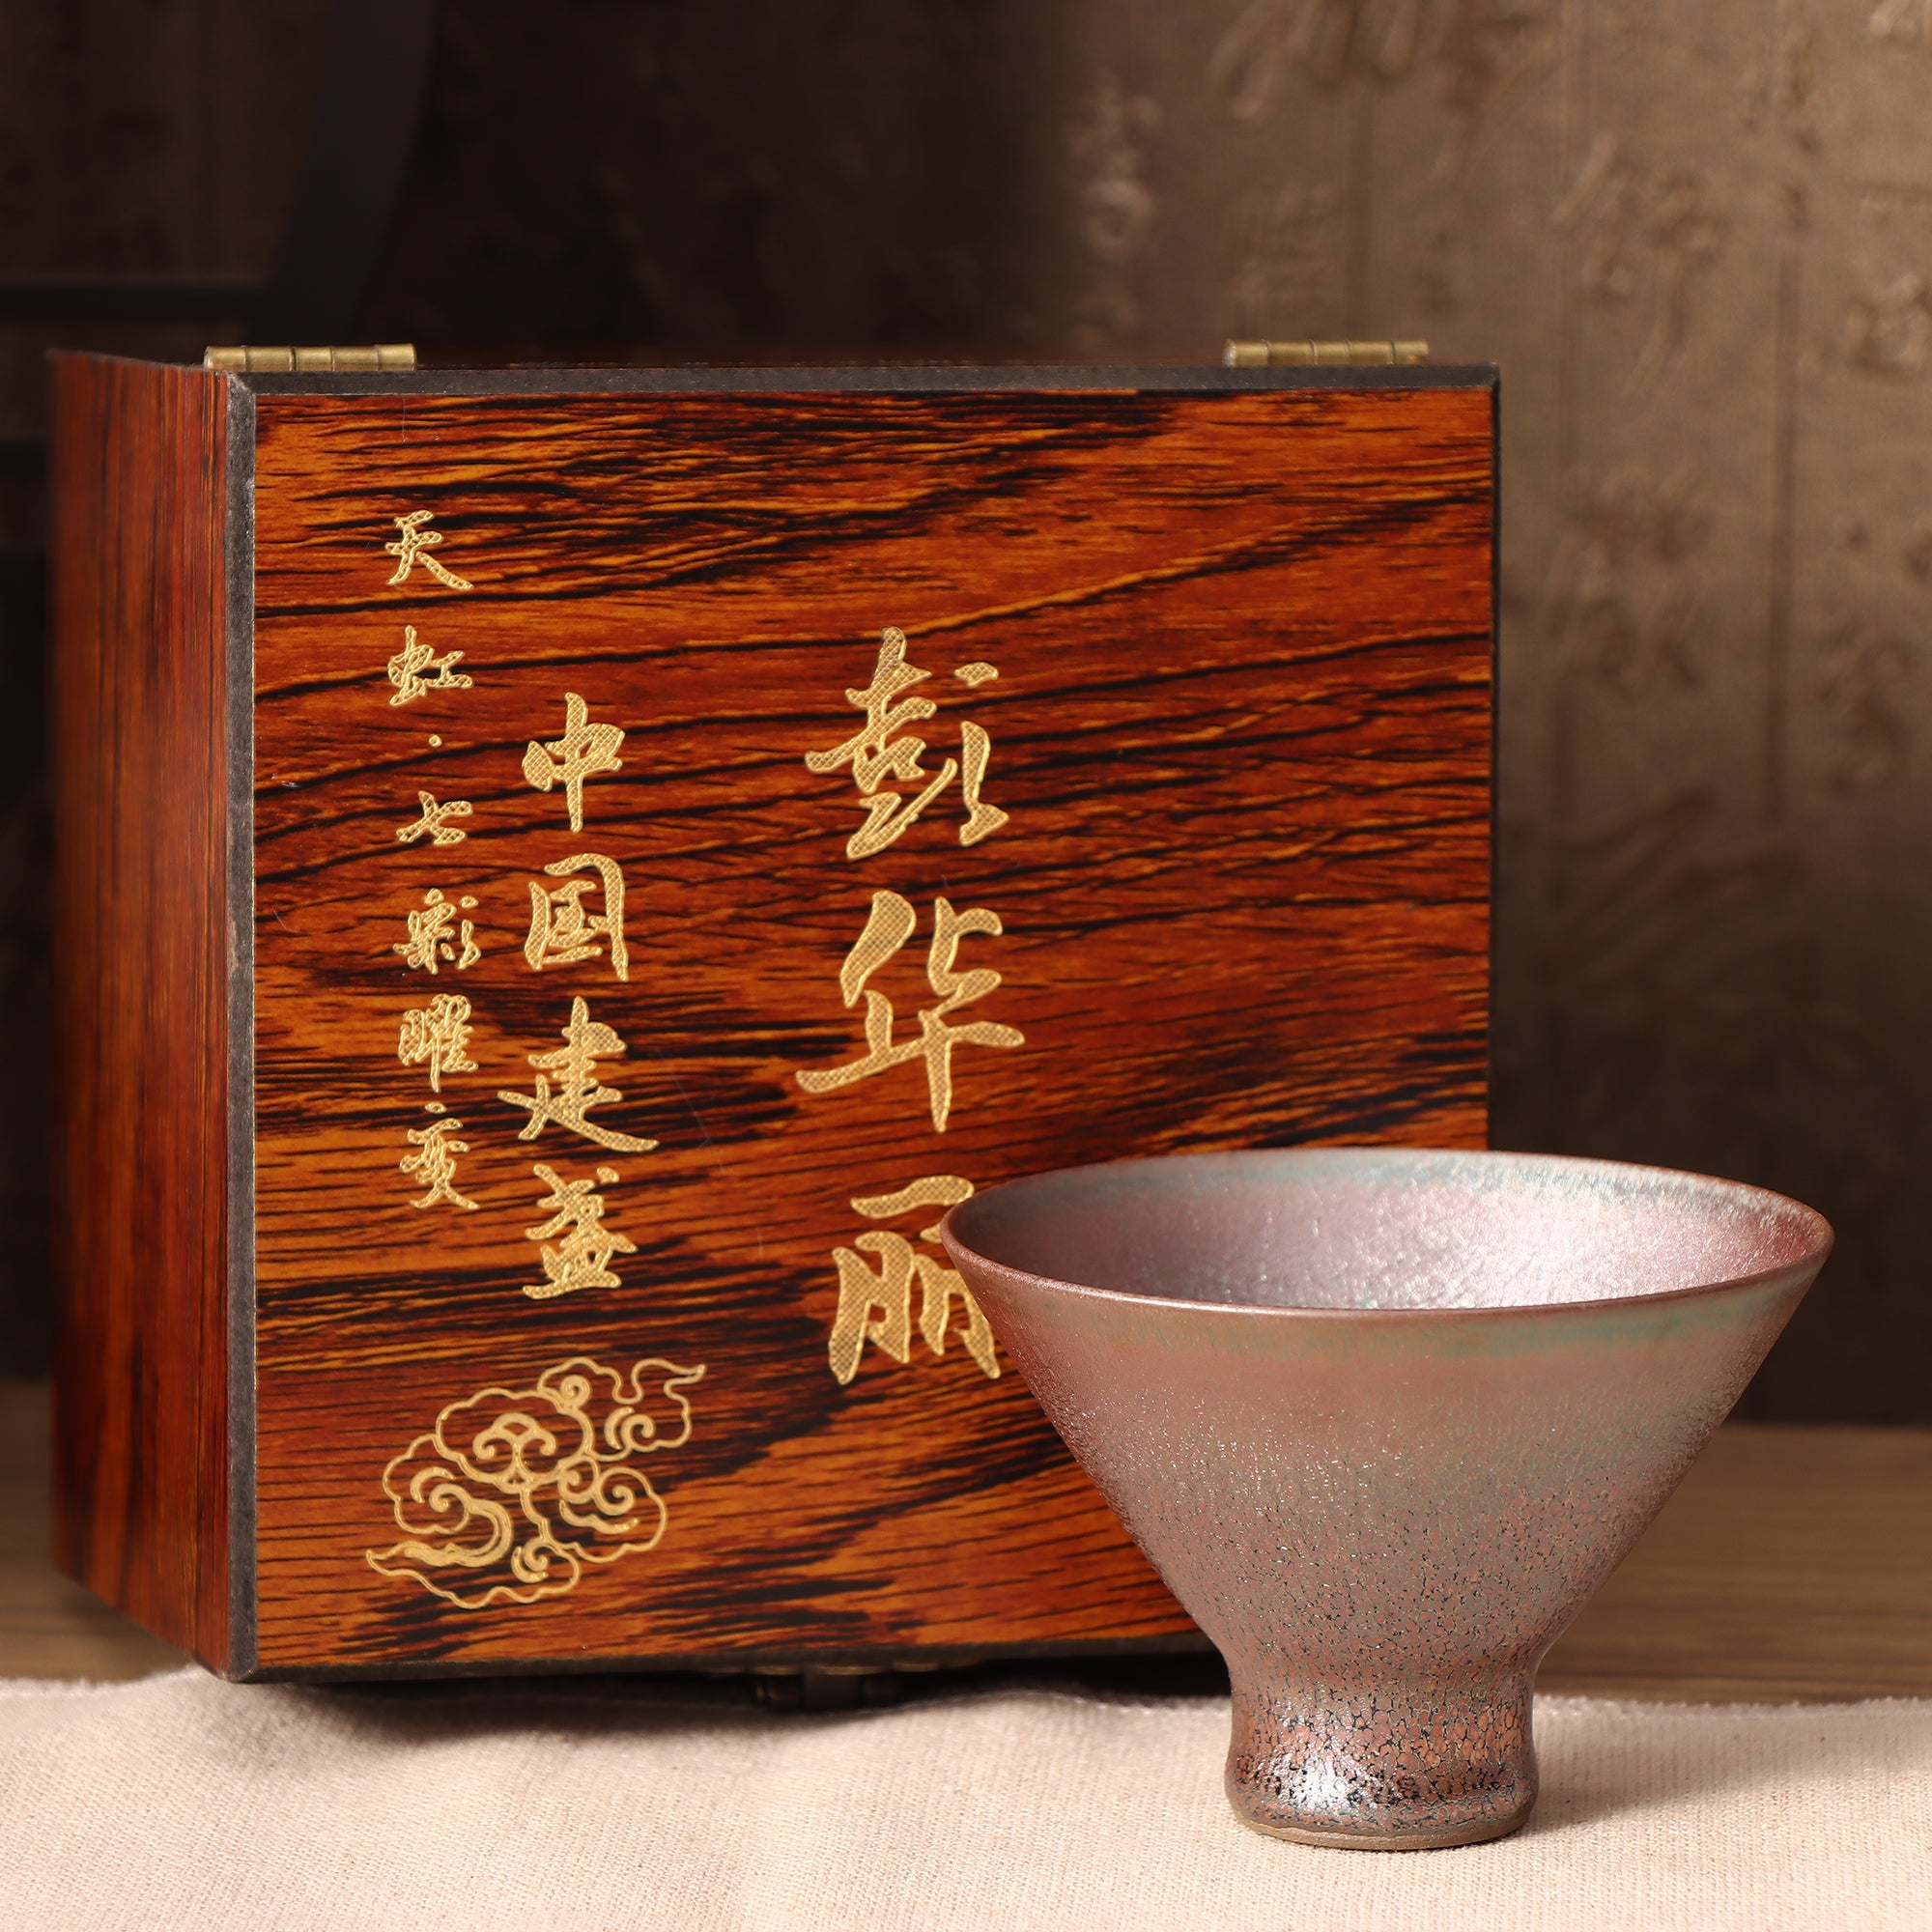 Master Peng Lihua Jianzhan teacup